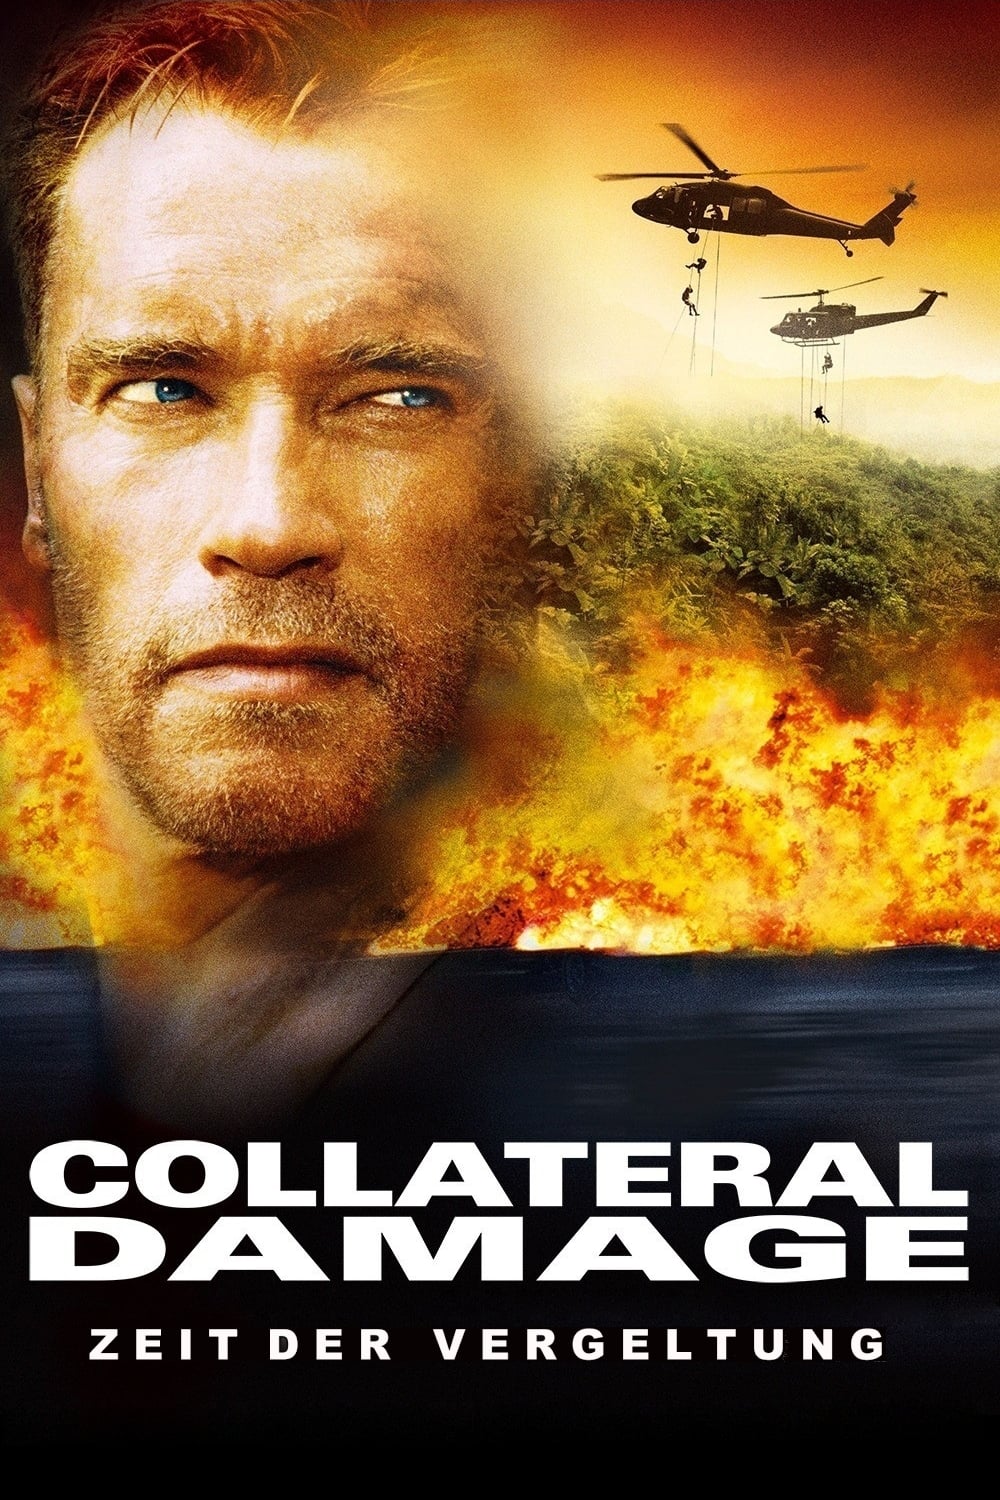 Plakat von "Collateral Damage - Zeit der Vergeltung"